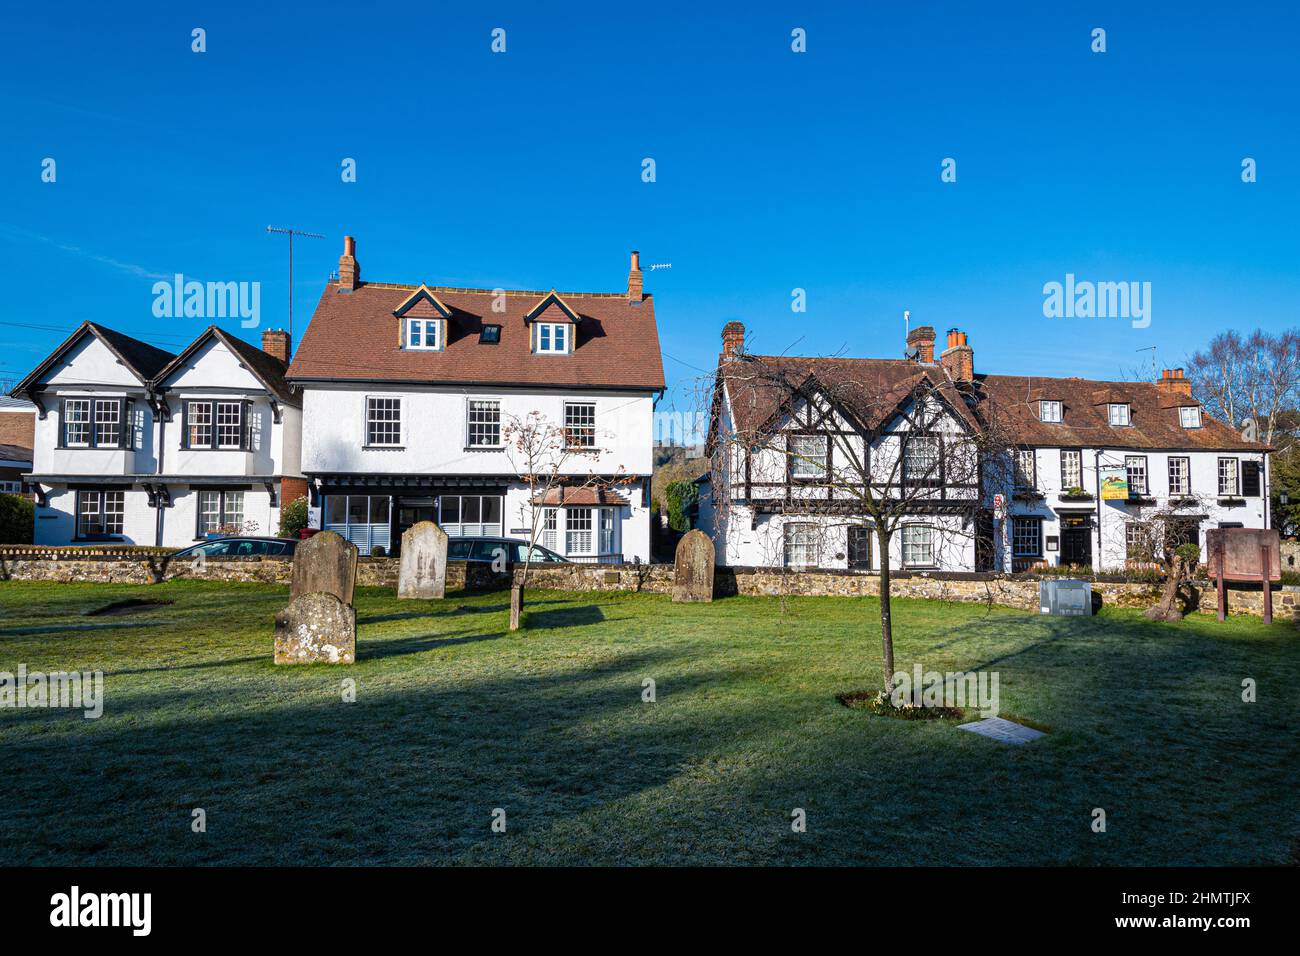 Le joli village de Mickleham à Surrey, vu du chantier naval, Angleterre, Royaume-Uni, lors d'une journée d'hiver ensoleillée avec un ciel bleu Banque D'Images